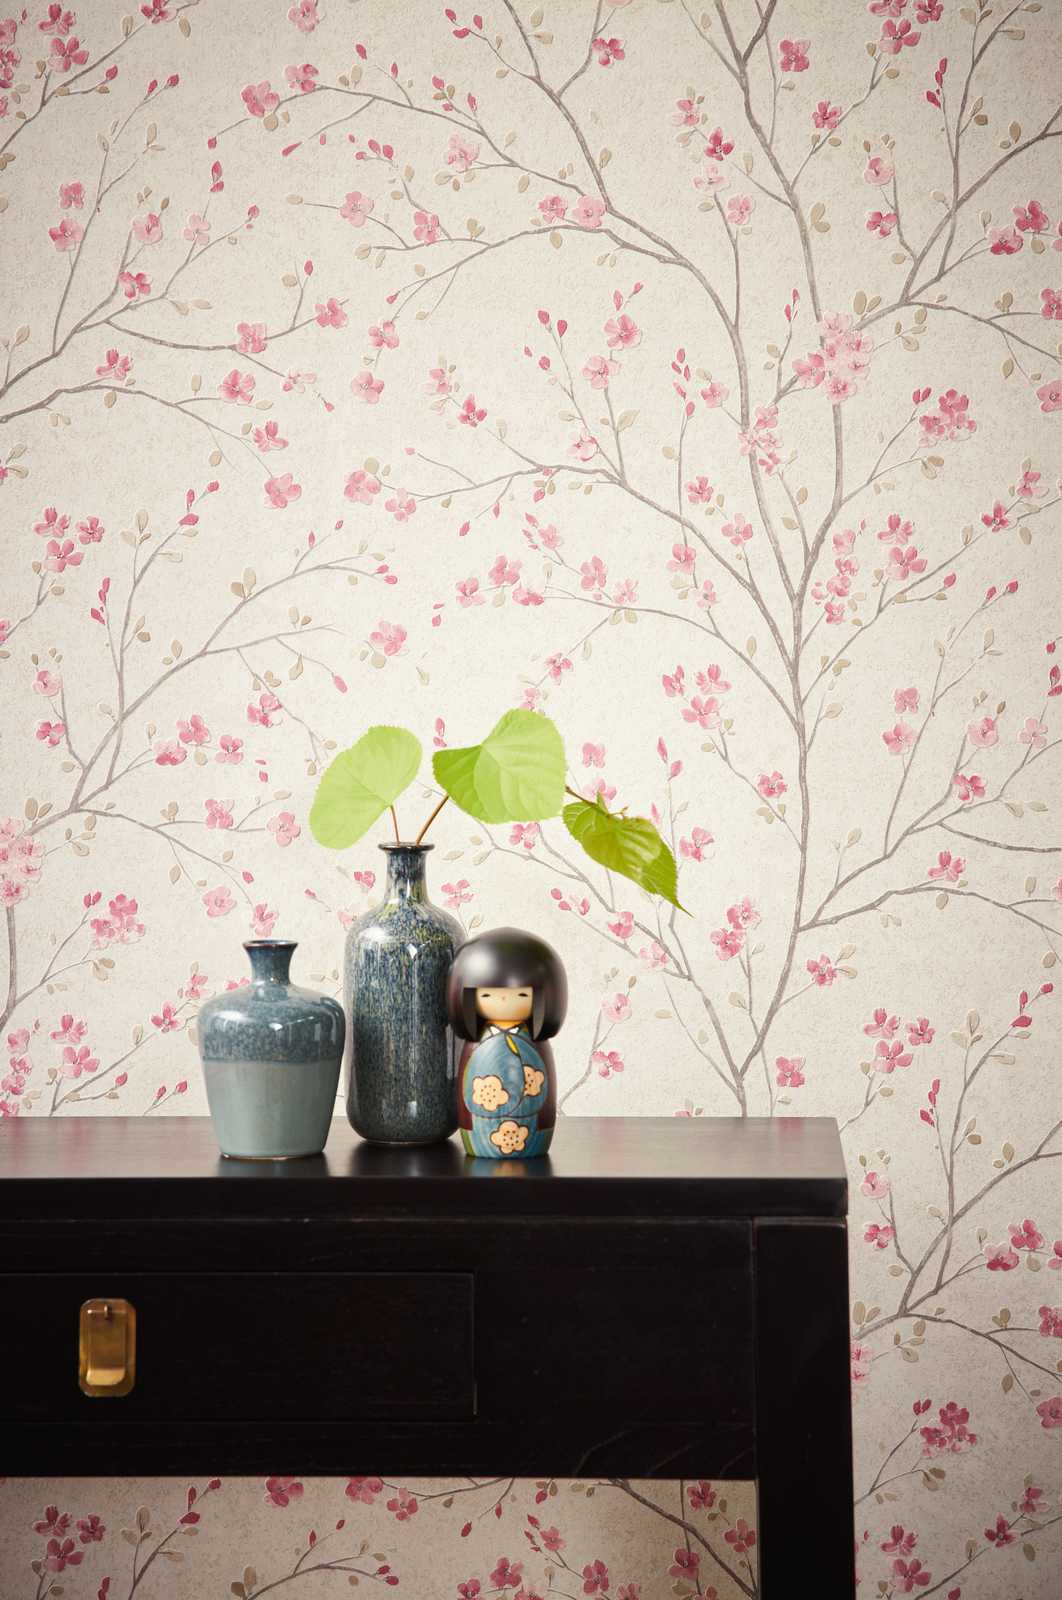             Papel pintado no tejido con diseño de flores de cerezo en estilo asiático - marrón, rosa, blanco
        